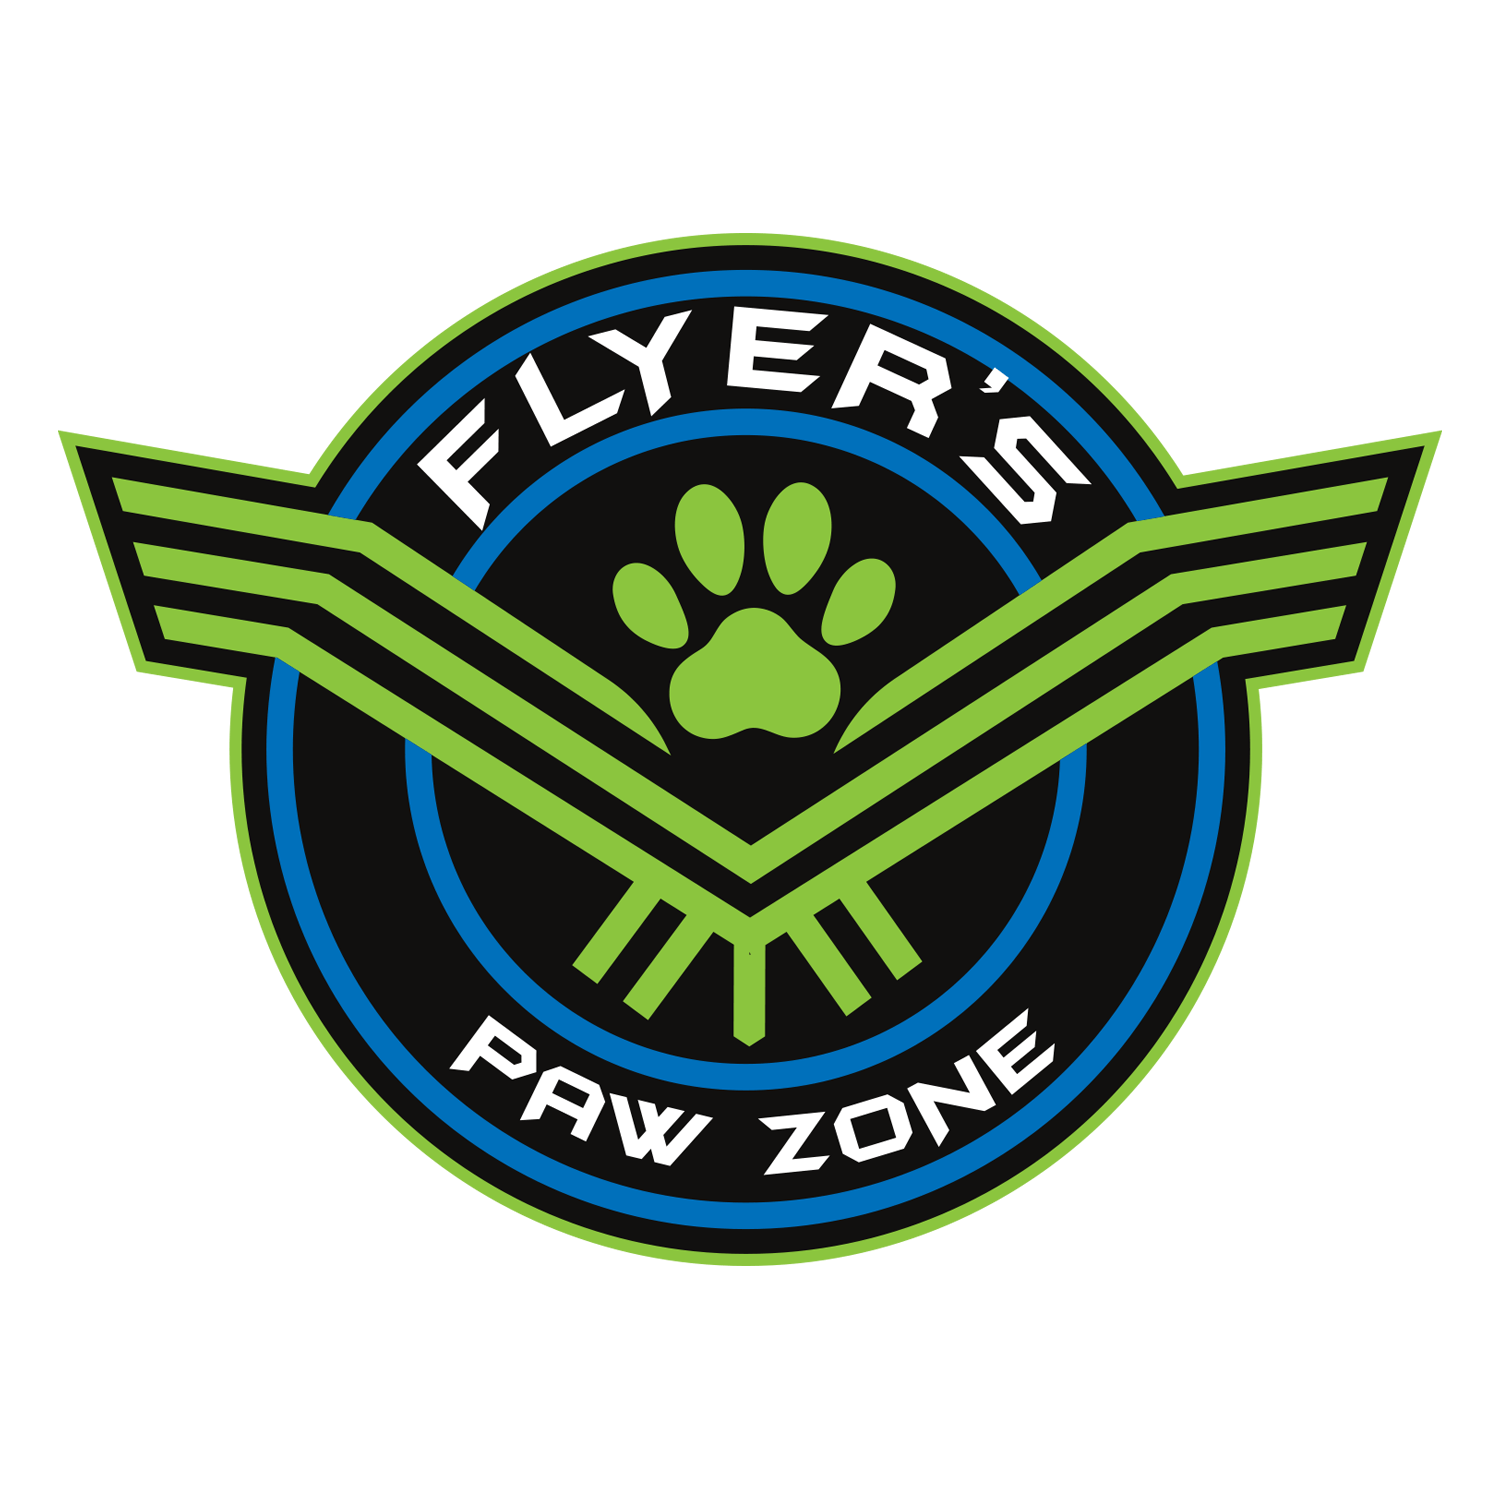 Flyer's Paw Zone logo